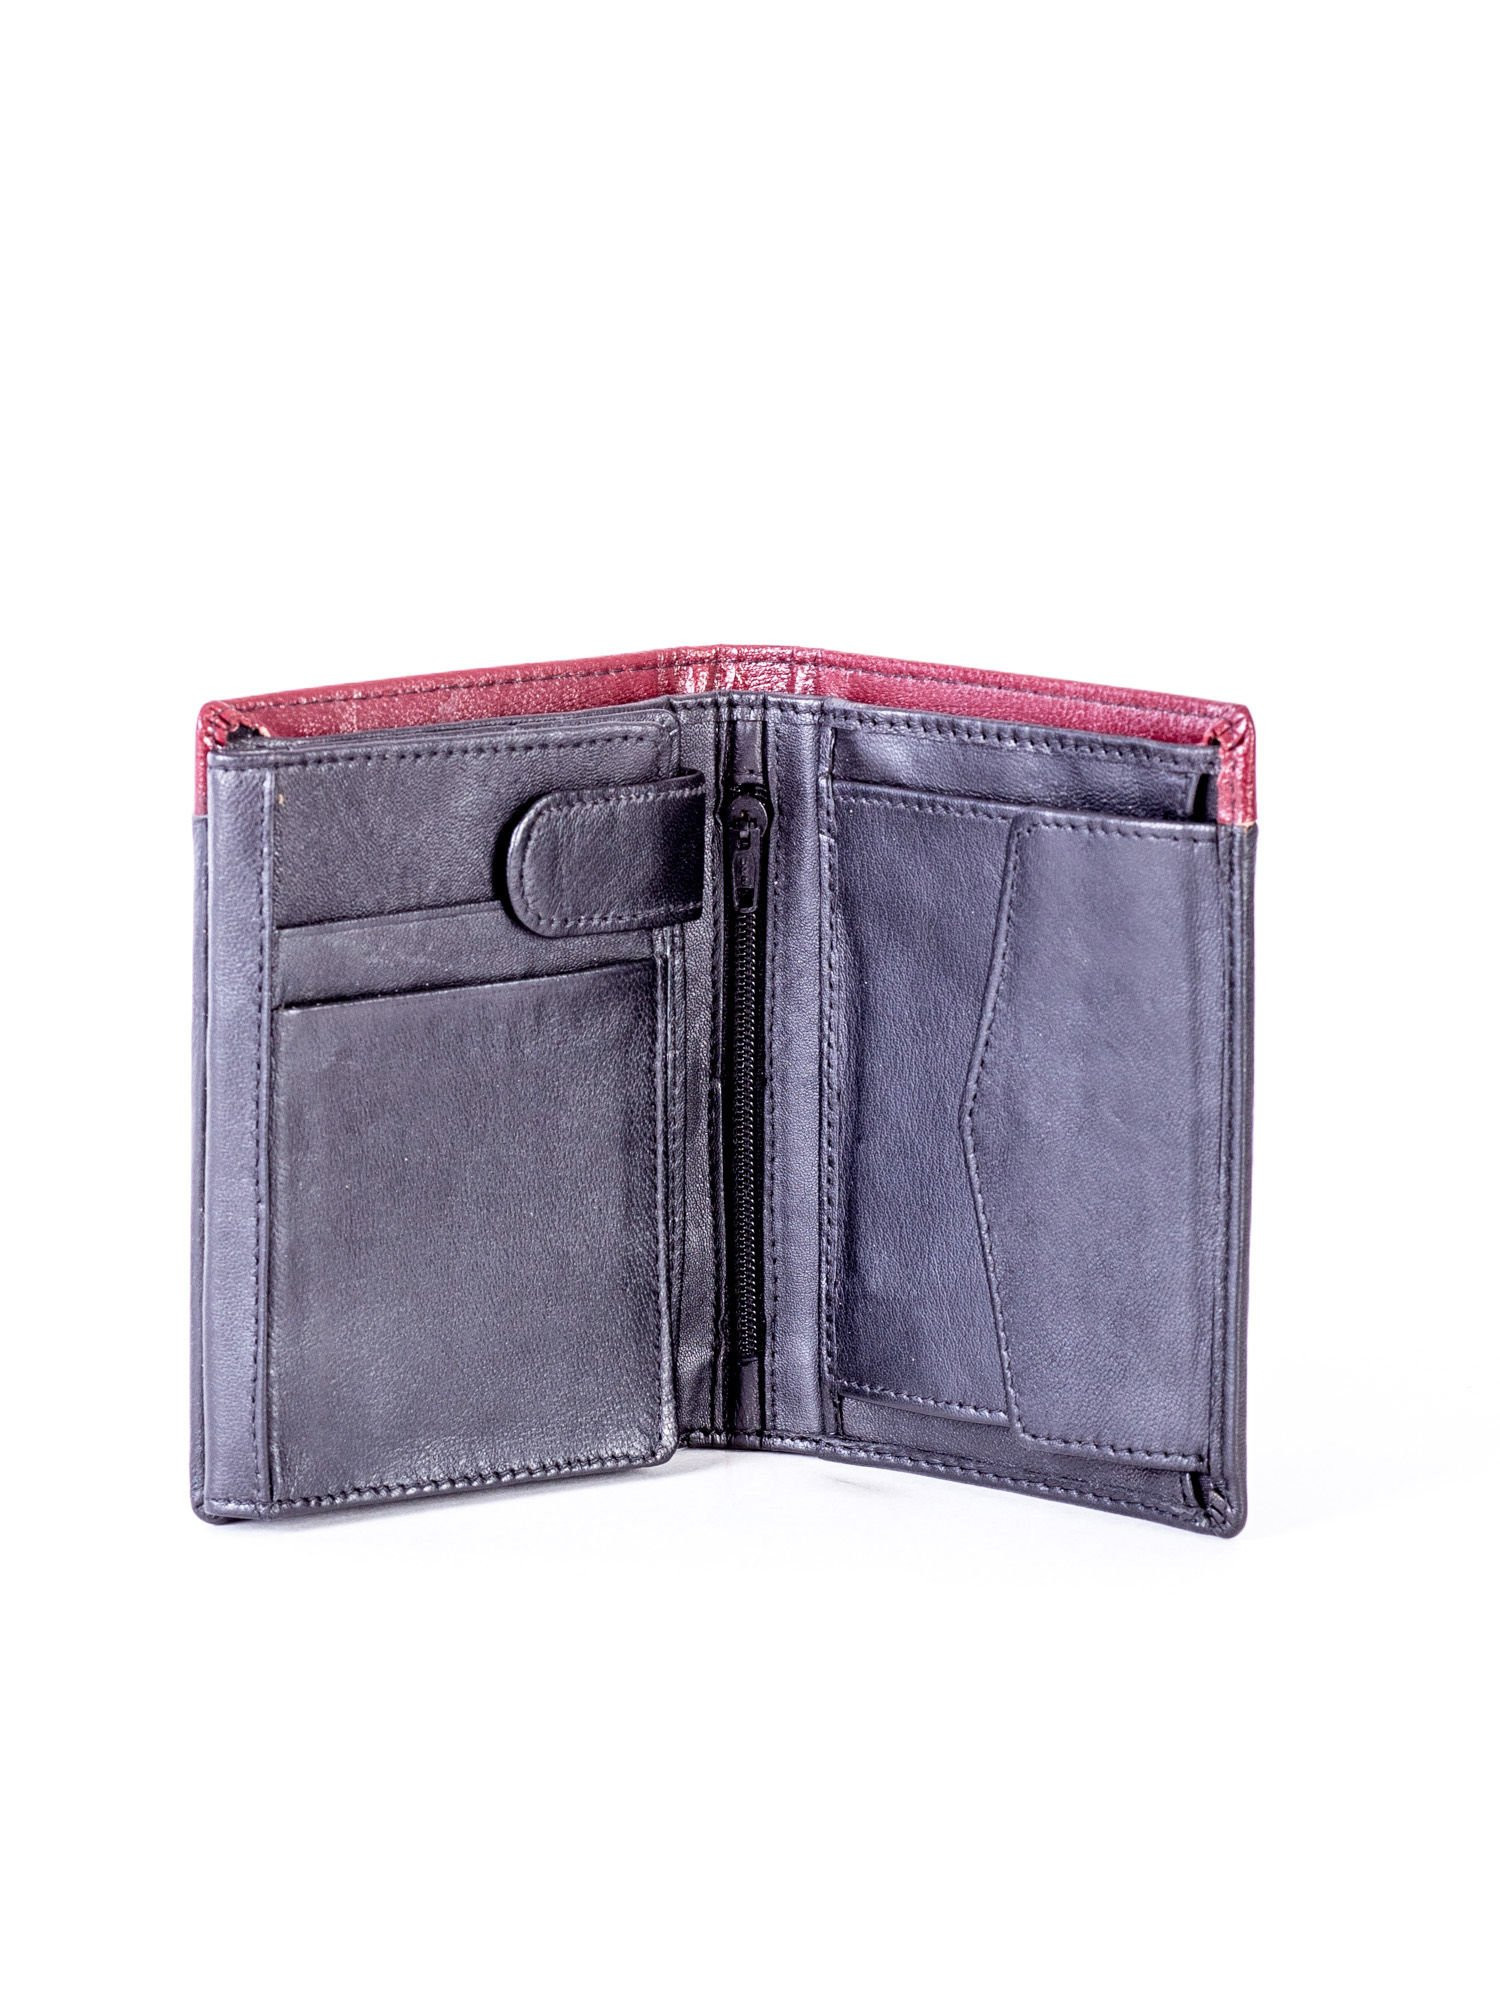 CE PR 326 FS peněženka.74 černá a červená jedna velikost